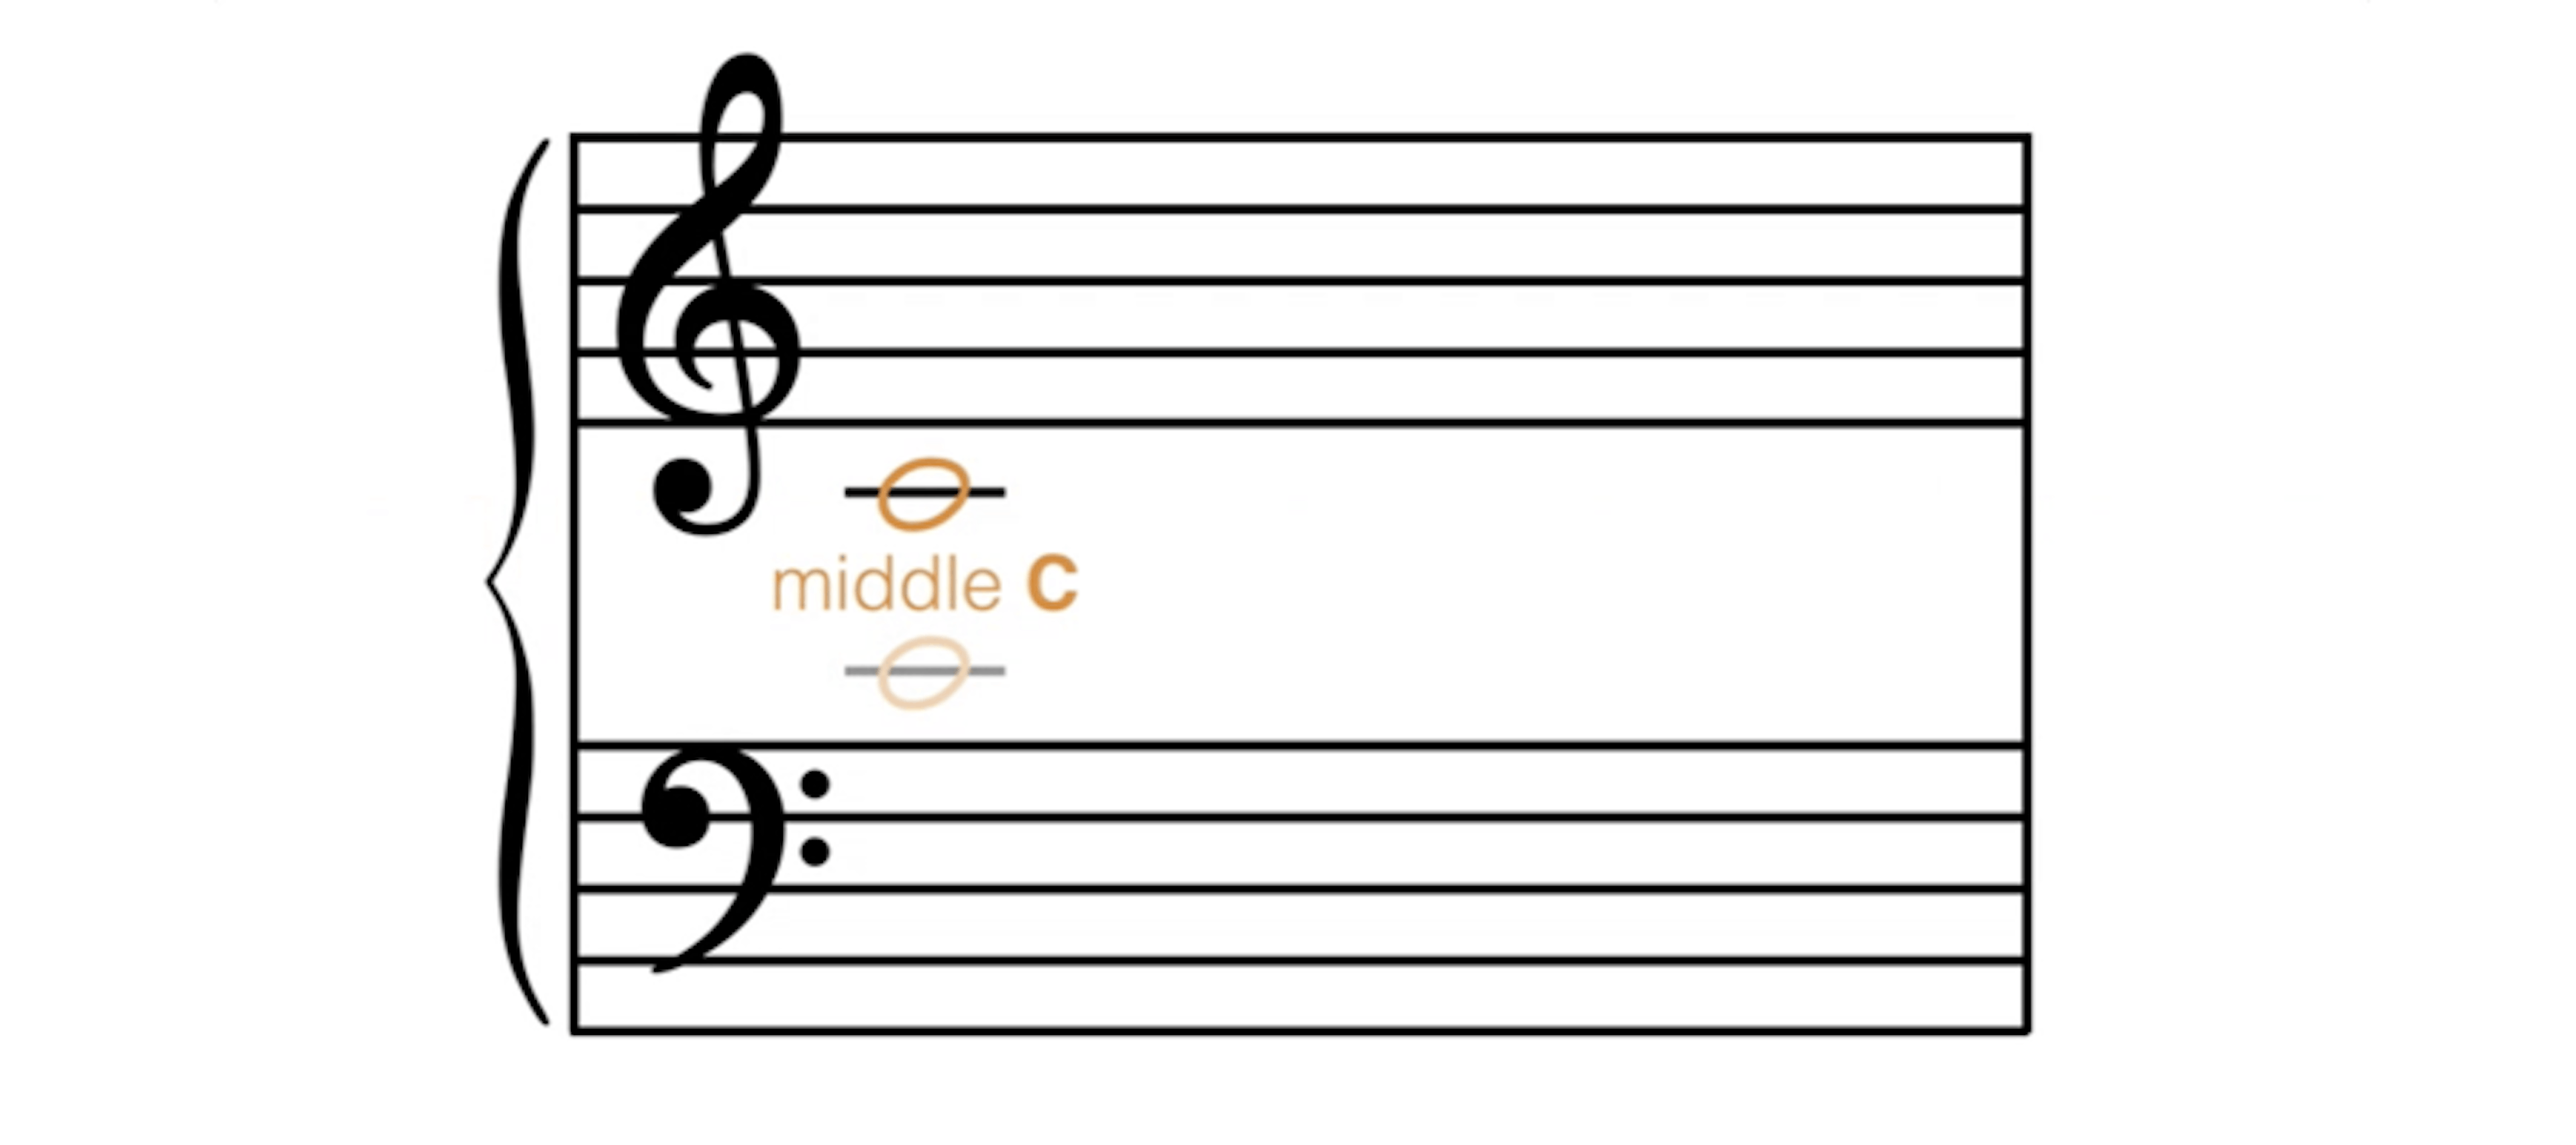 Das mittlere C am Bassschlüssel